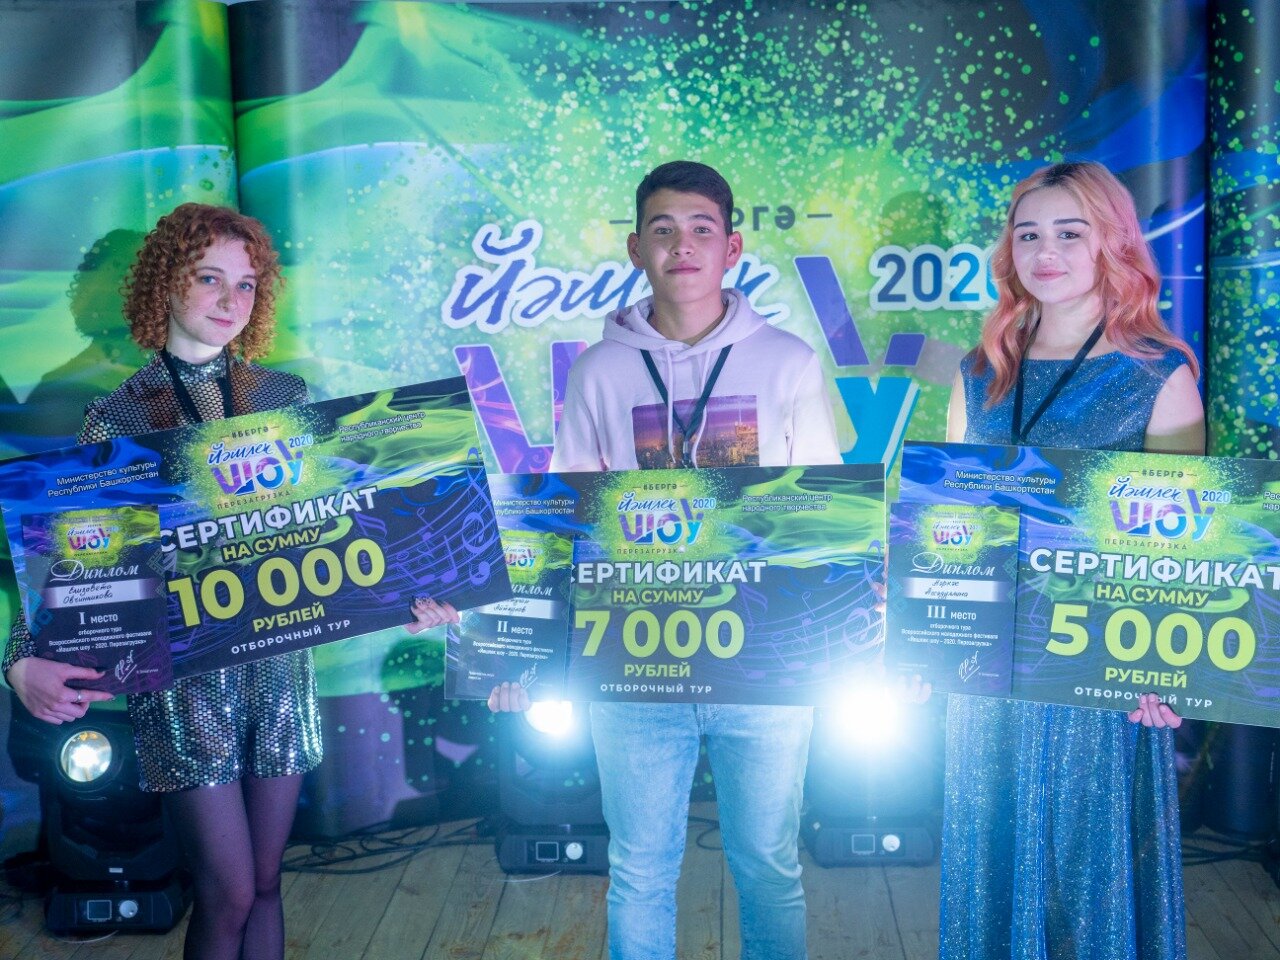 Кастинги Всероссийского молодежного фестиваля «Йэшлек шоу - 2020» продолжаются